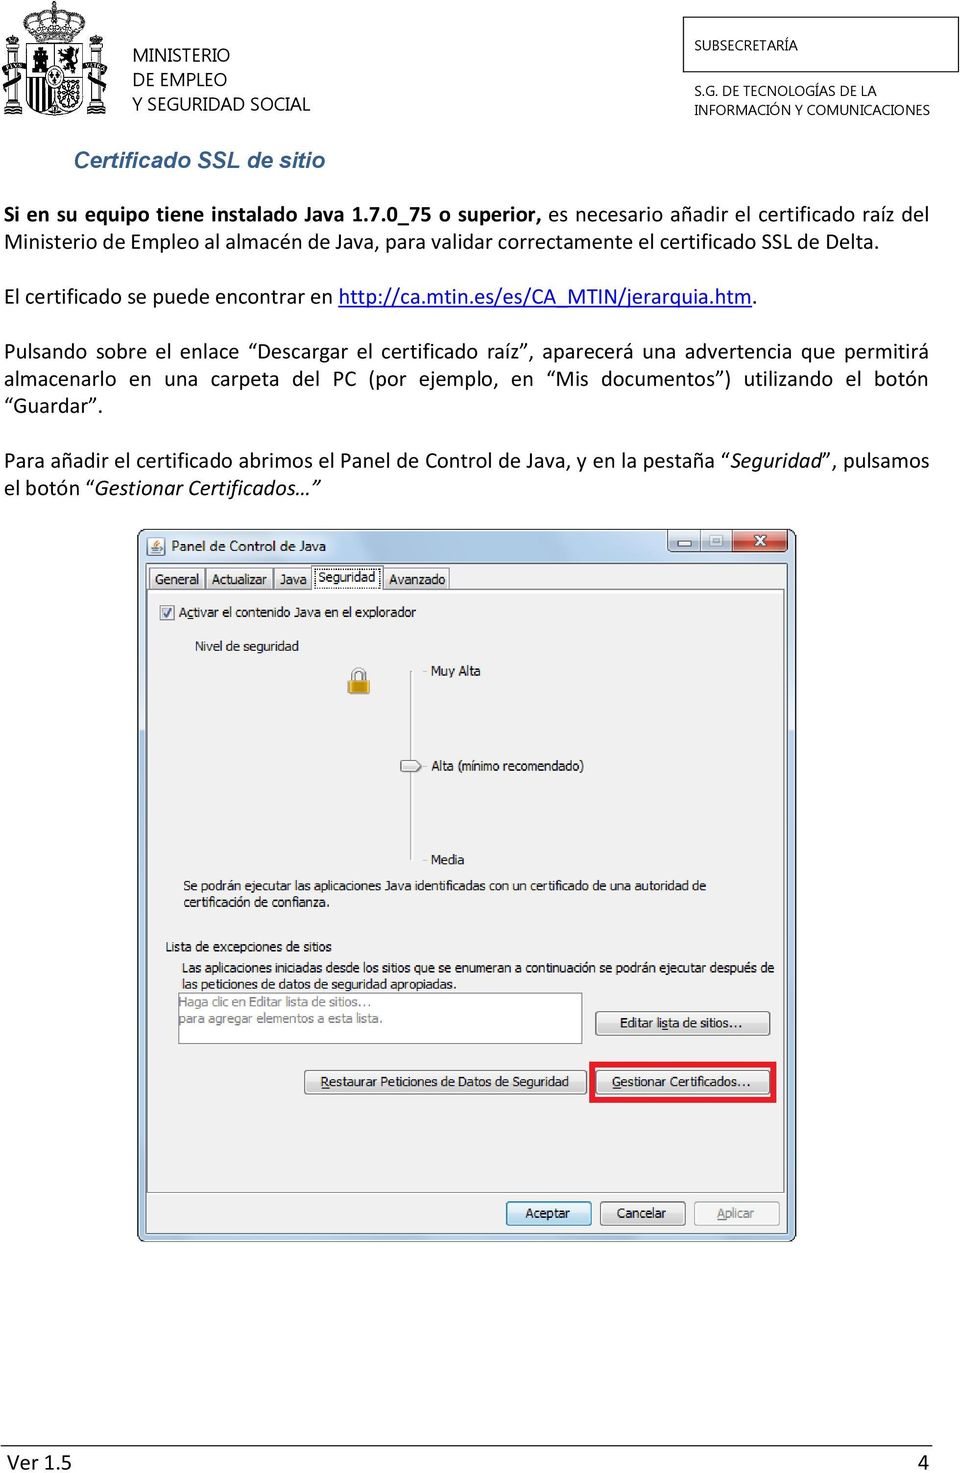 El certificado se puede encontrar en http://ca.mtin.es/es/ca_mtin/jerarquia.htm.